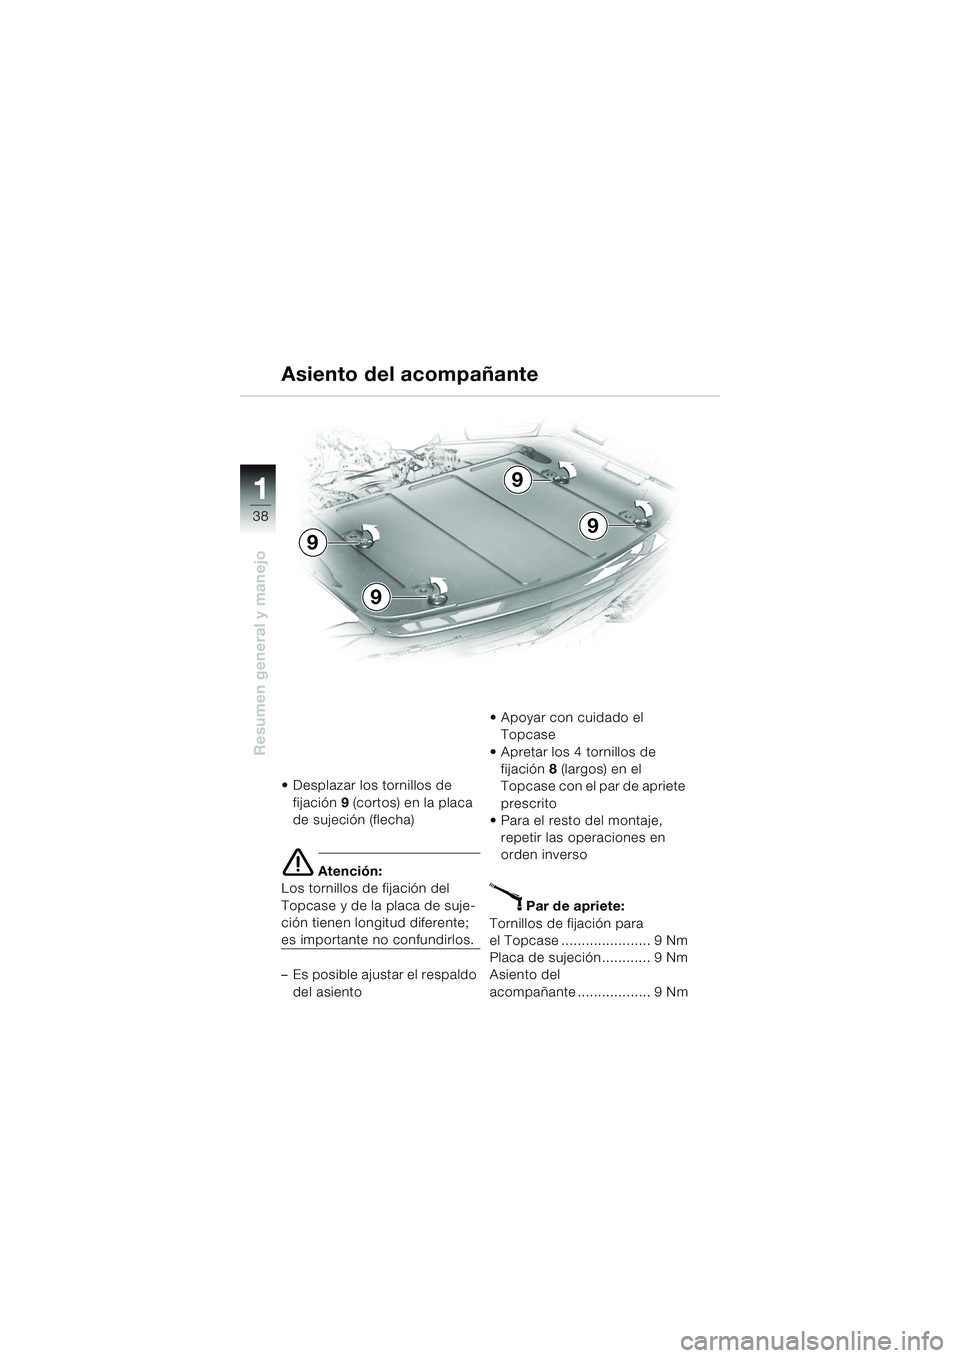 BMW MOTORRAD K 1200 LT 2005  Manual de instrucciones (in Spanish) 38
Resumen general y manejo
1
Asiento del acompañante
 Desplazar los tornillos de fijación 9 (cortos)  en la placa 
de sujeción (flecha)
e Atención:
Los tornillos de fijación del 
Topcase y de l